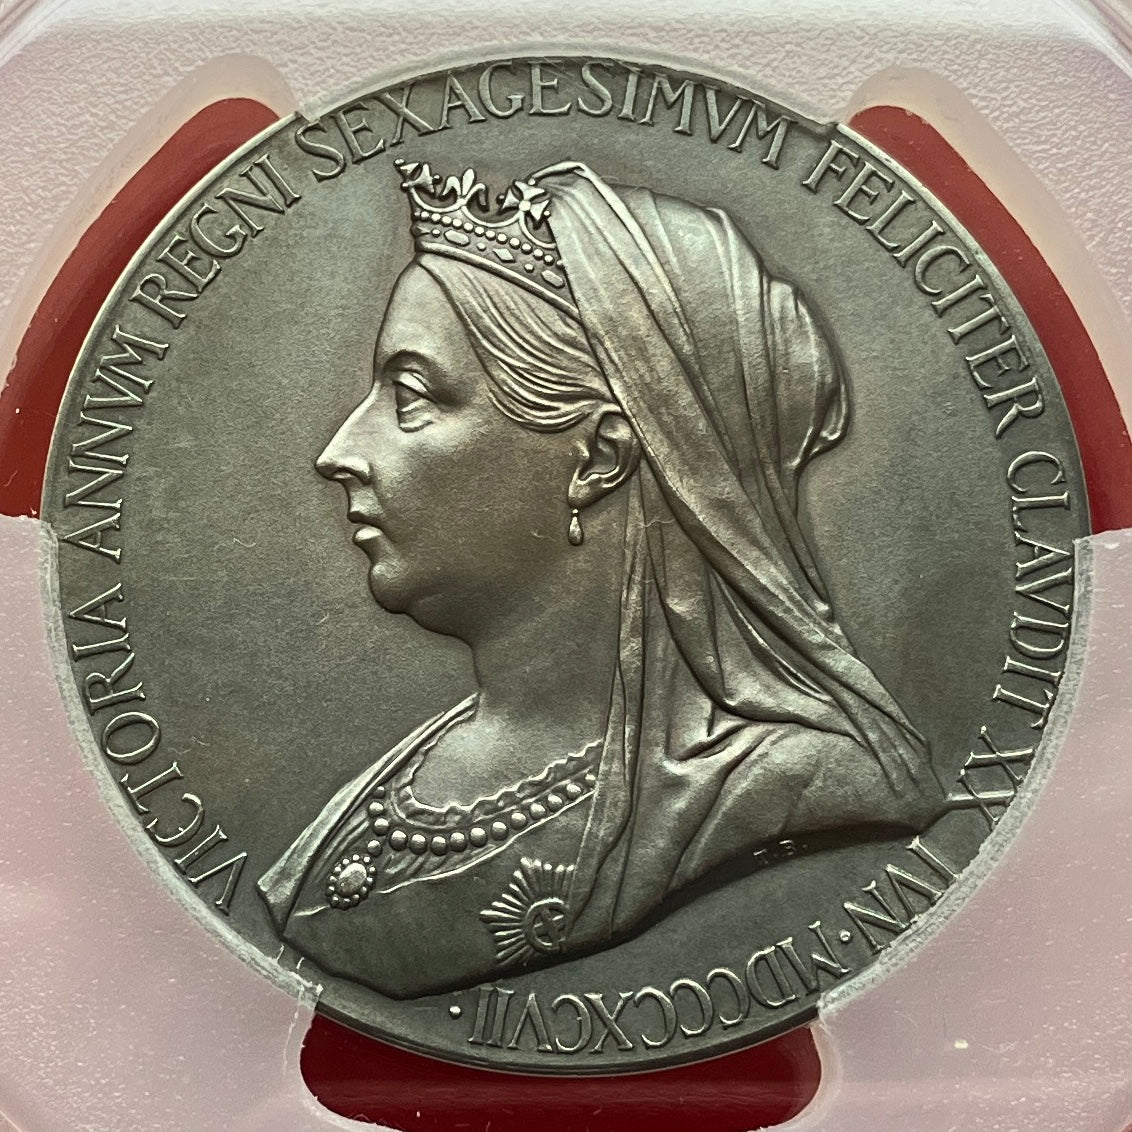 1897年 英国 ヴィクトリア女王 即位60周年記念 銀メダルSP64 + ...